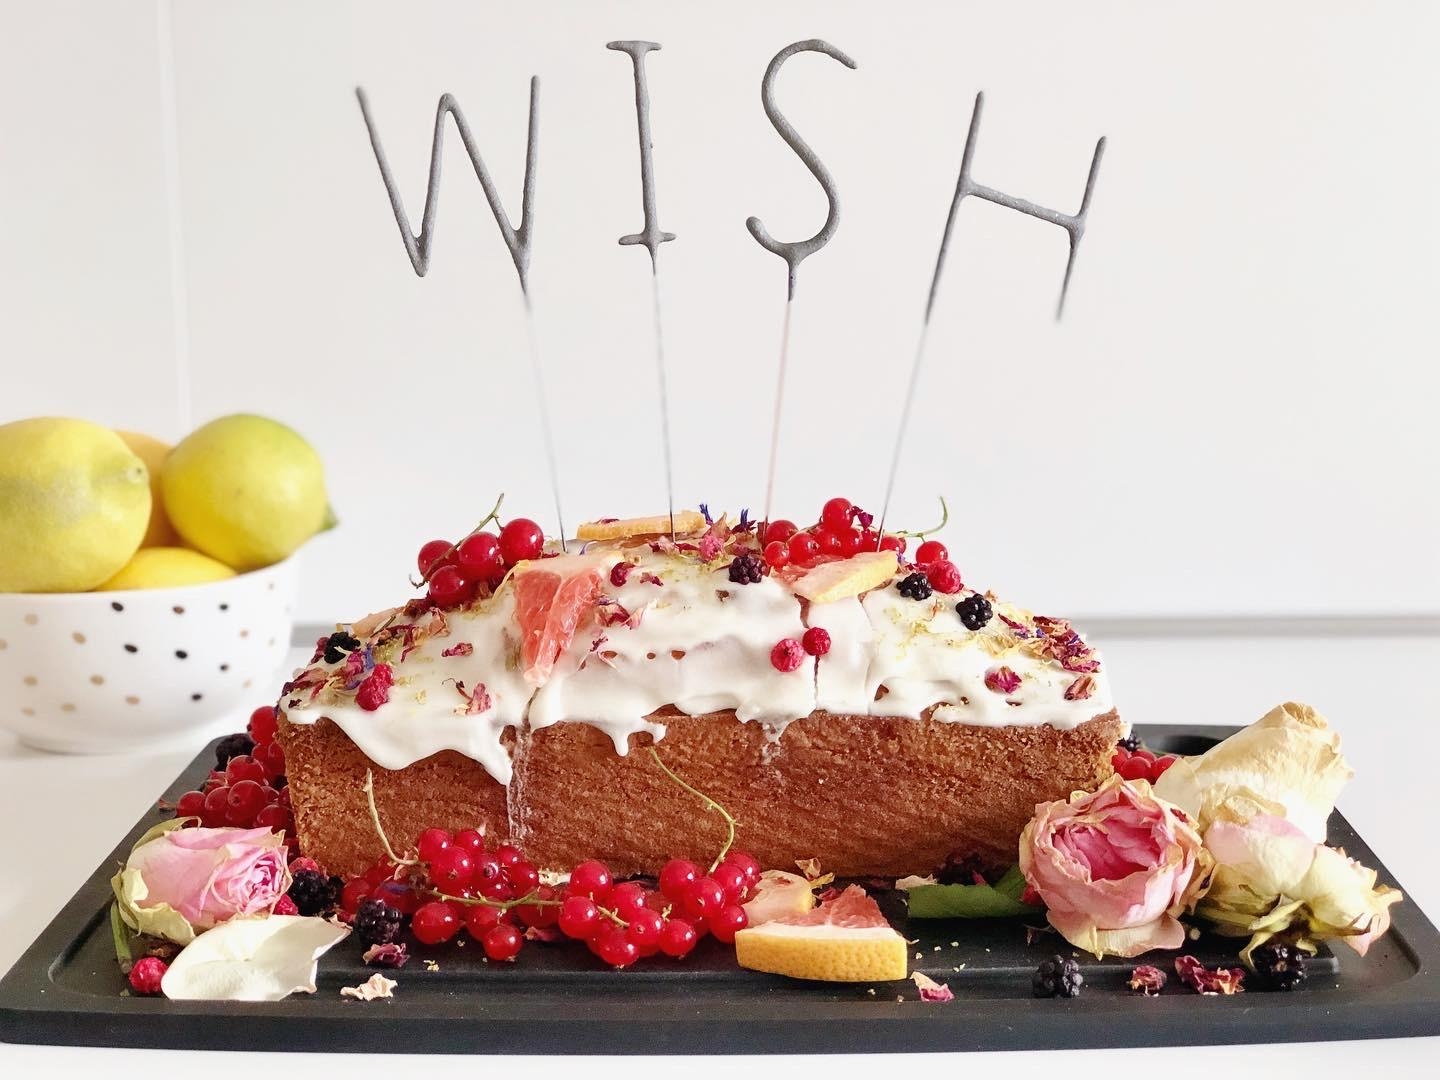 Saftiger #Zitronenrührkuchen 🍋 
#partyfood #party #food #cake #kuchen #birthday #backen #Rezept in den Kommentaren 😋